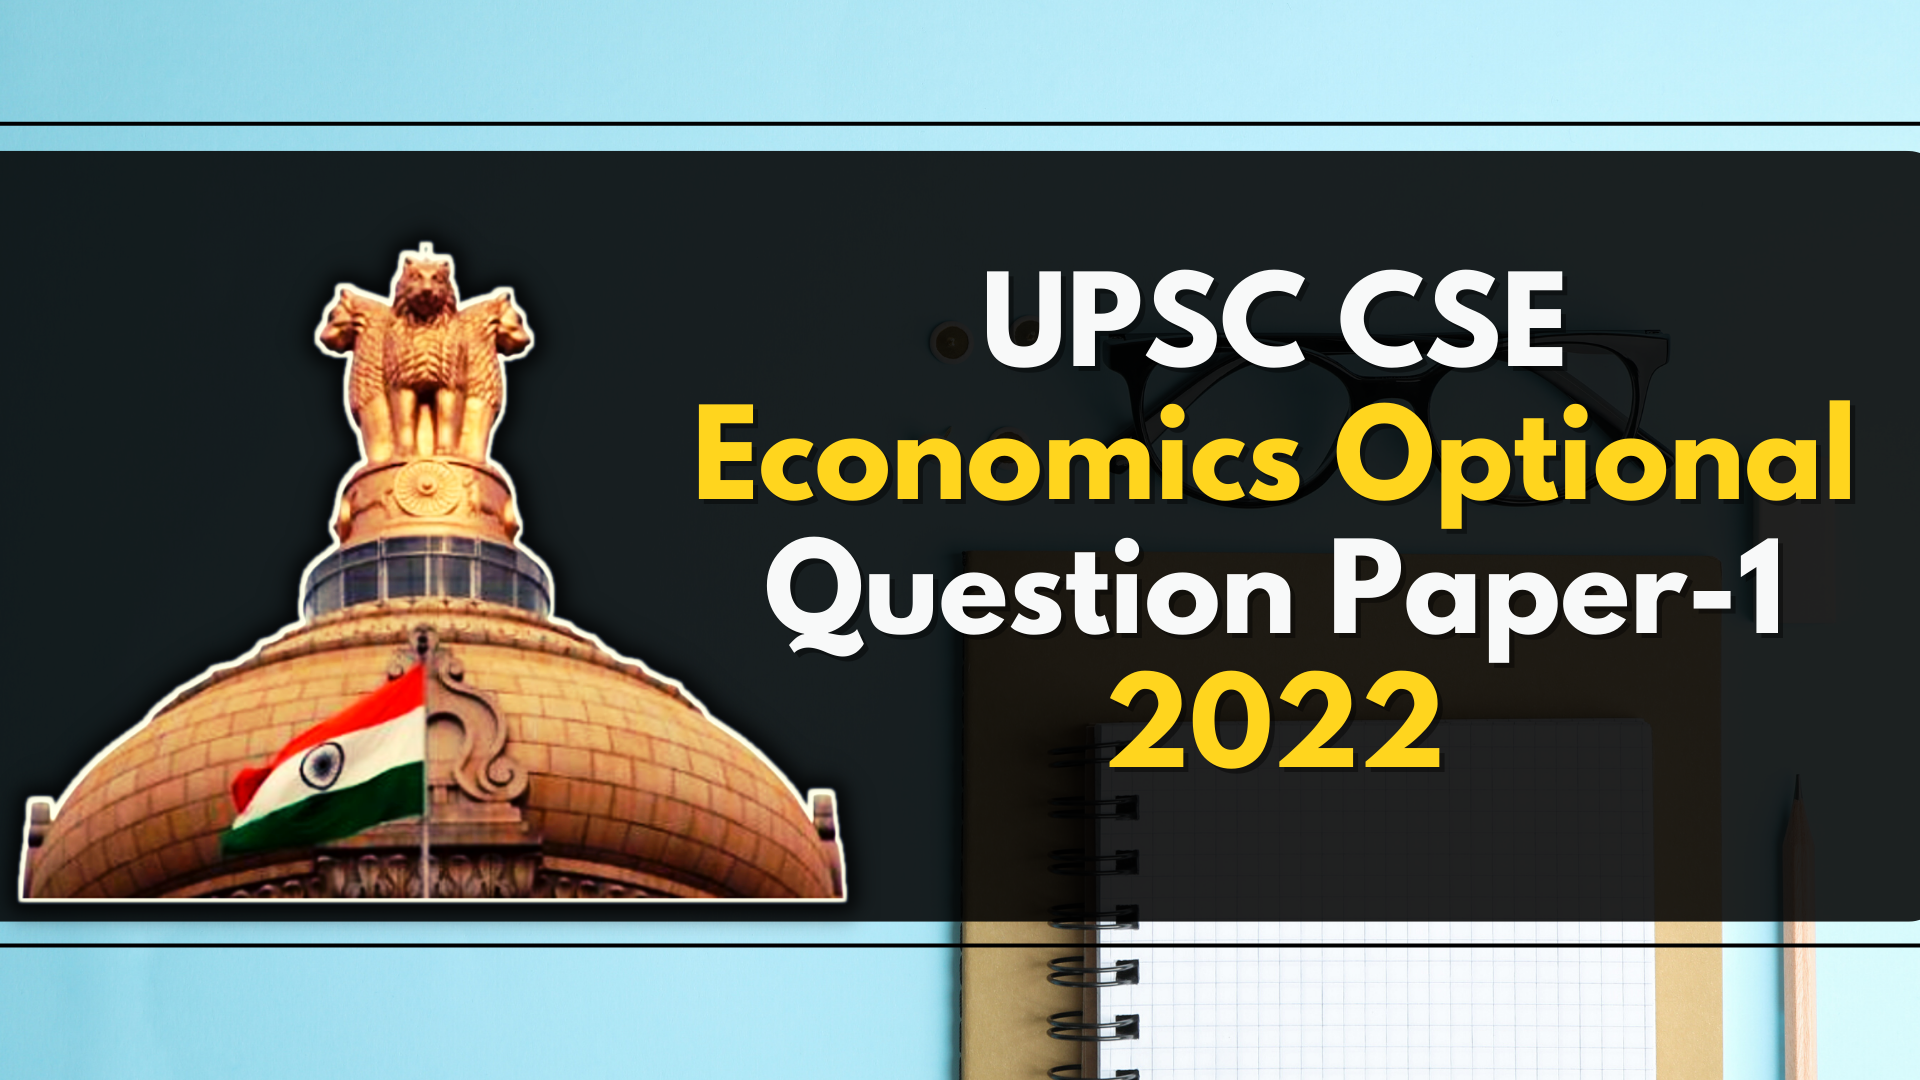 UPSC CSE Paper 1